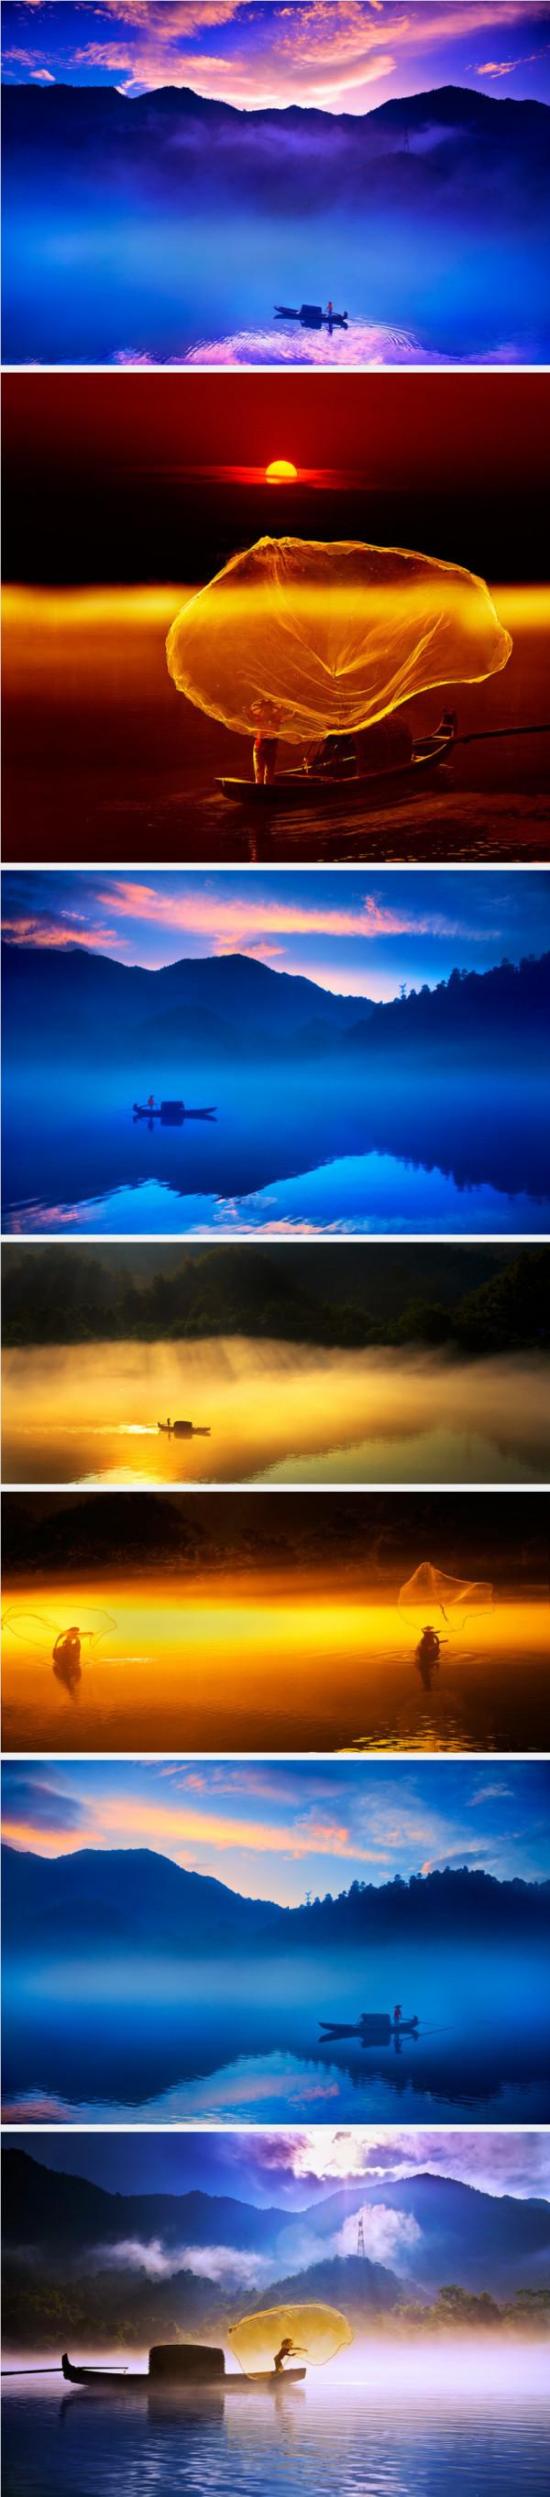 小东江位于广西桂林，漓江左岸，是当之无愧的摄影胜地。酷旅图 链接：http://www.coollvtu.com